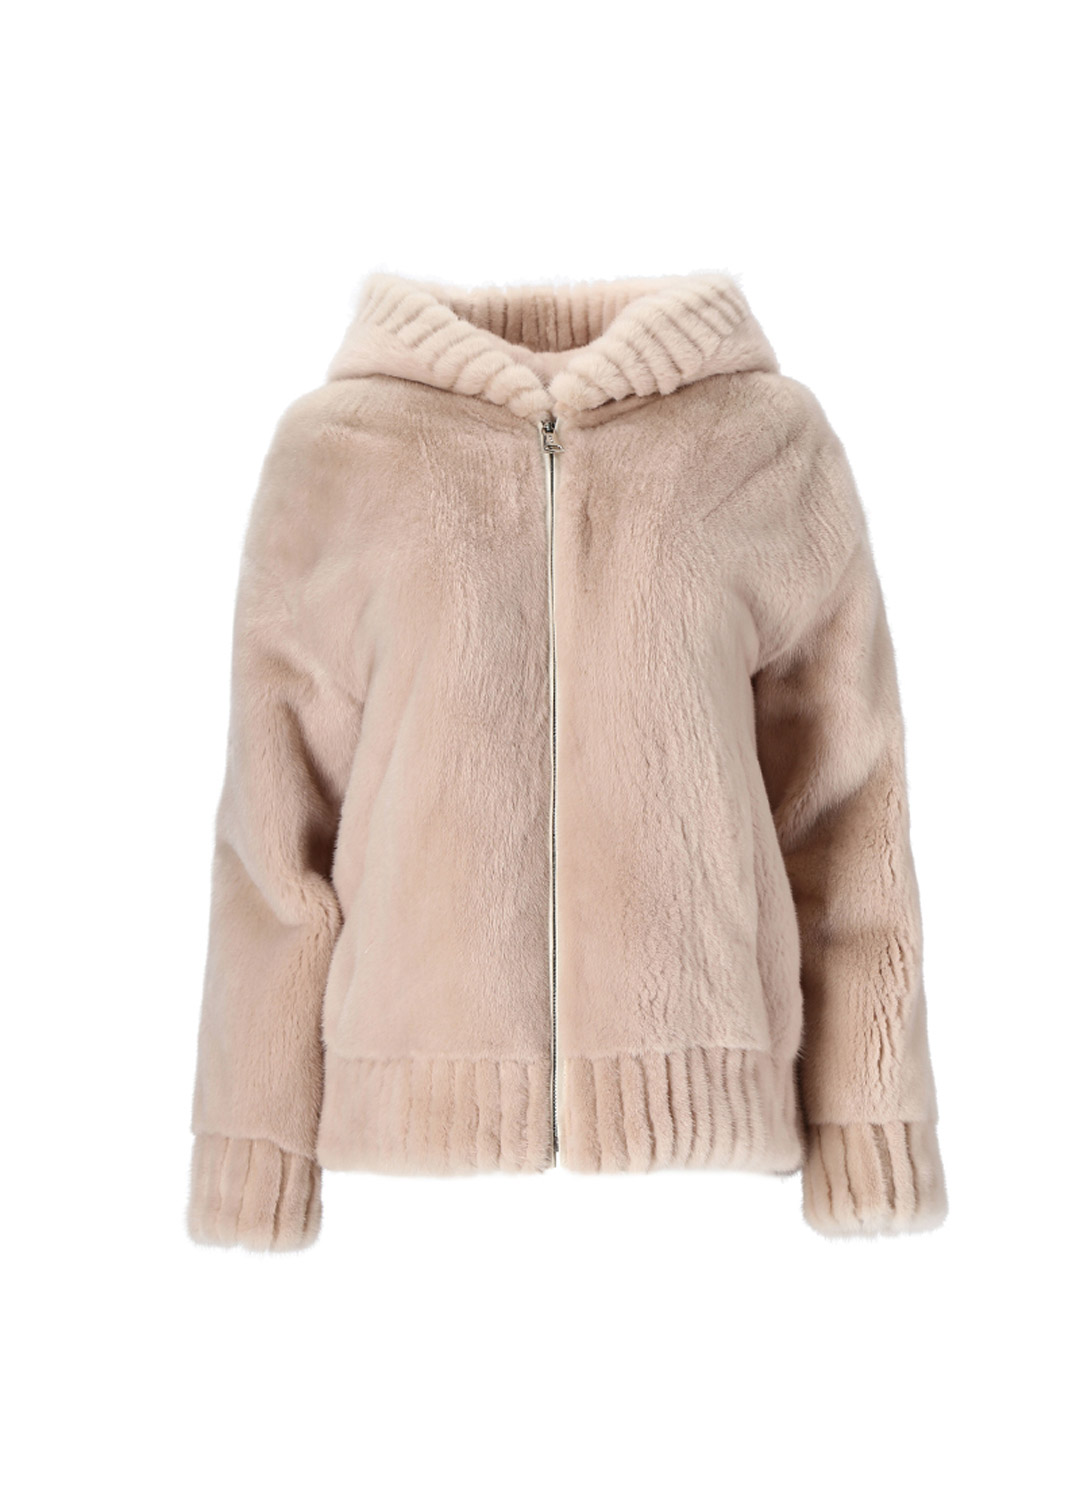 Hoody zip up mink coat [Pink beige]